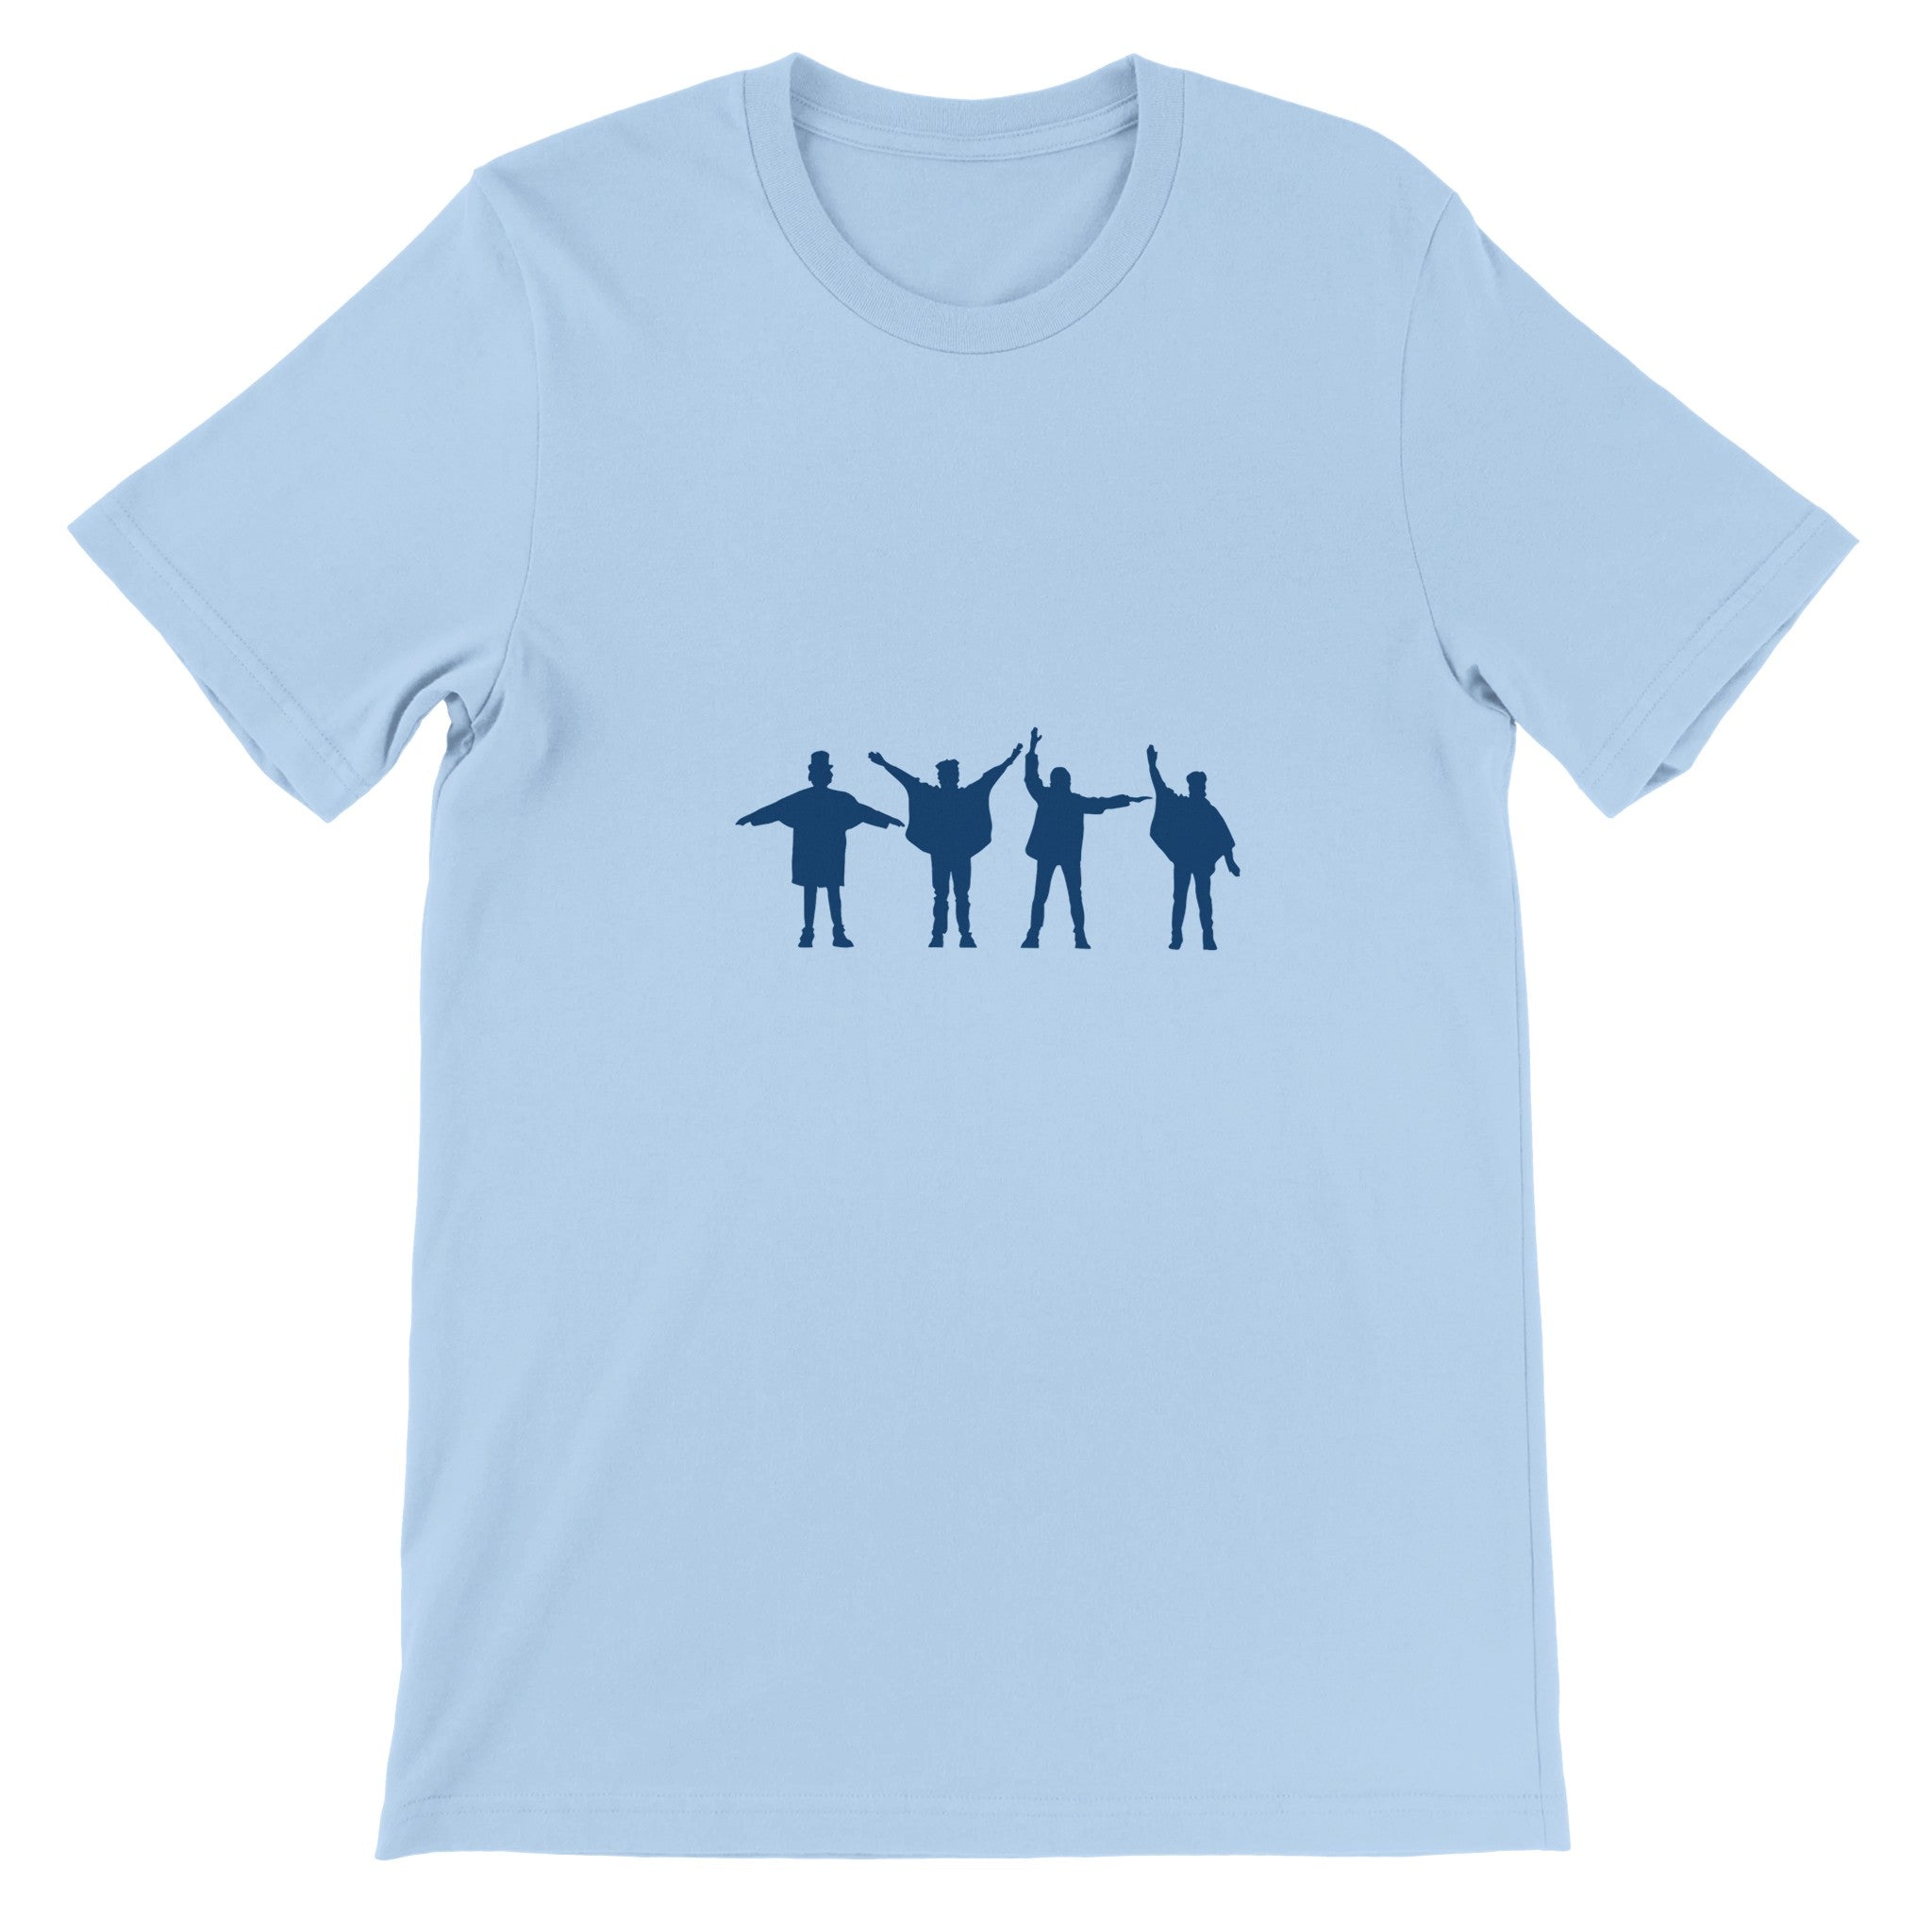 Help The Beatles Crewneck T-shirt - Optimalprint